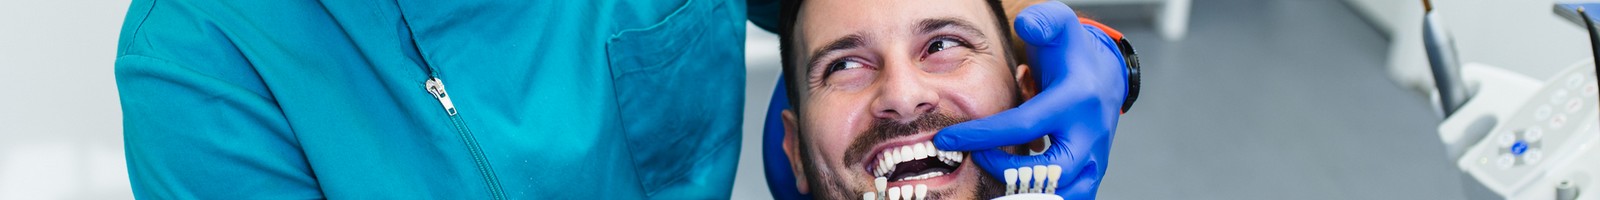 Santé bucco-dentaire : une concession inédite des dentistes pour garantir leur partenariat avec la Sécurité sociale